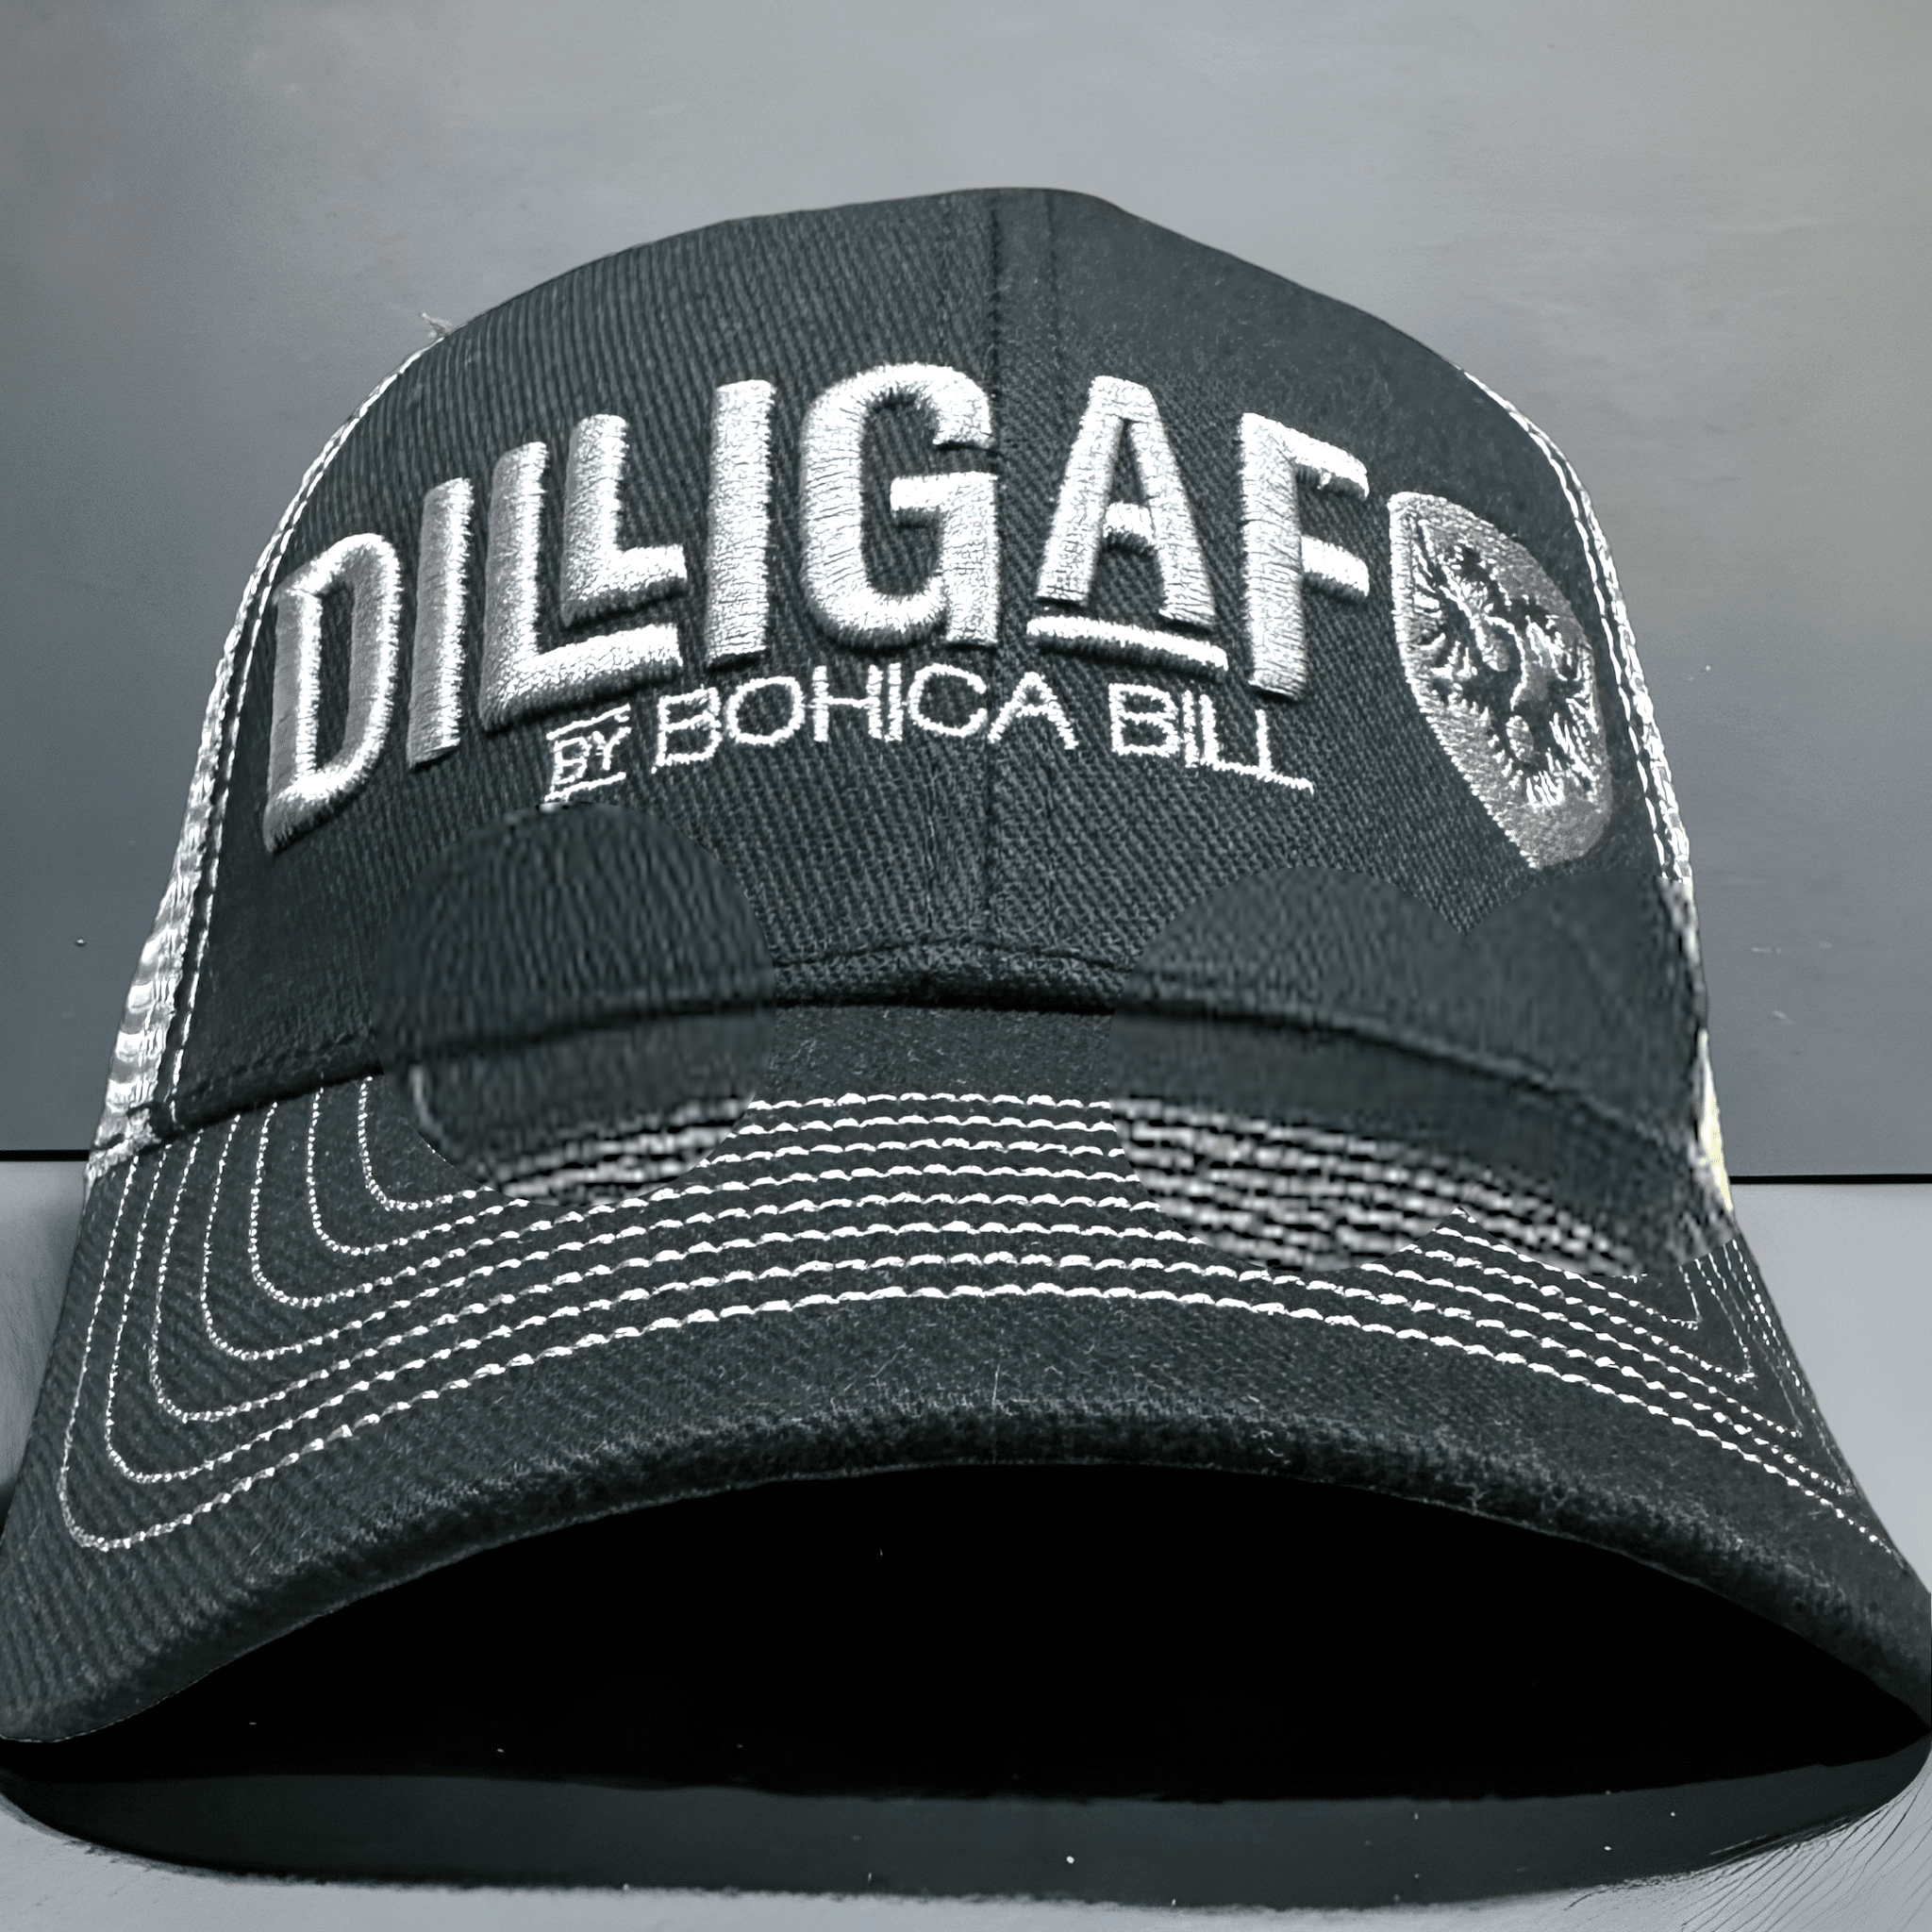 Dilligaf Mesh Gray & Black Adjustable Hat – Dilligaf by Bohica Bill